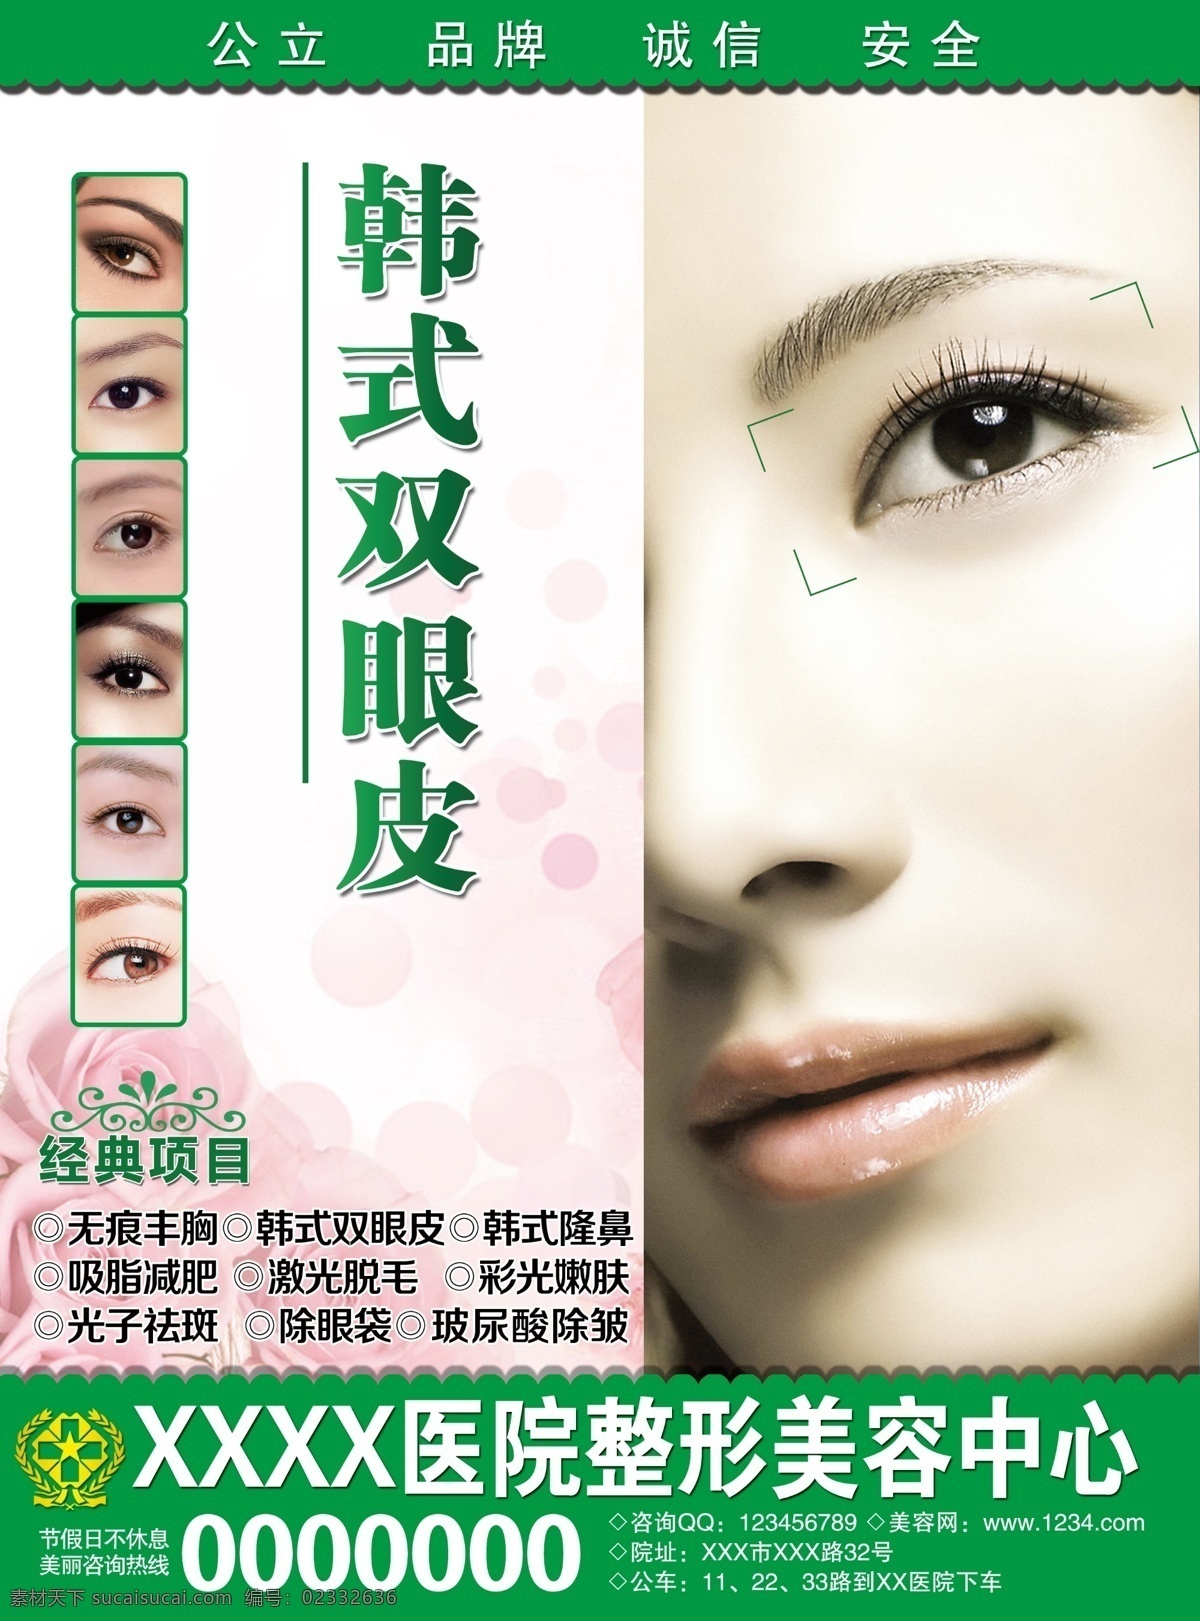 韩式双眼皮 双眼皮 整形 整形美容 广告设计模板 源文件